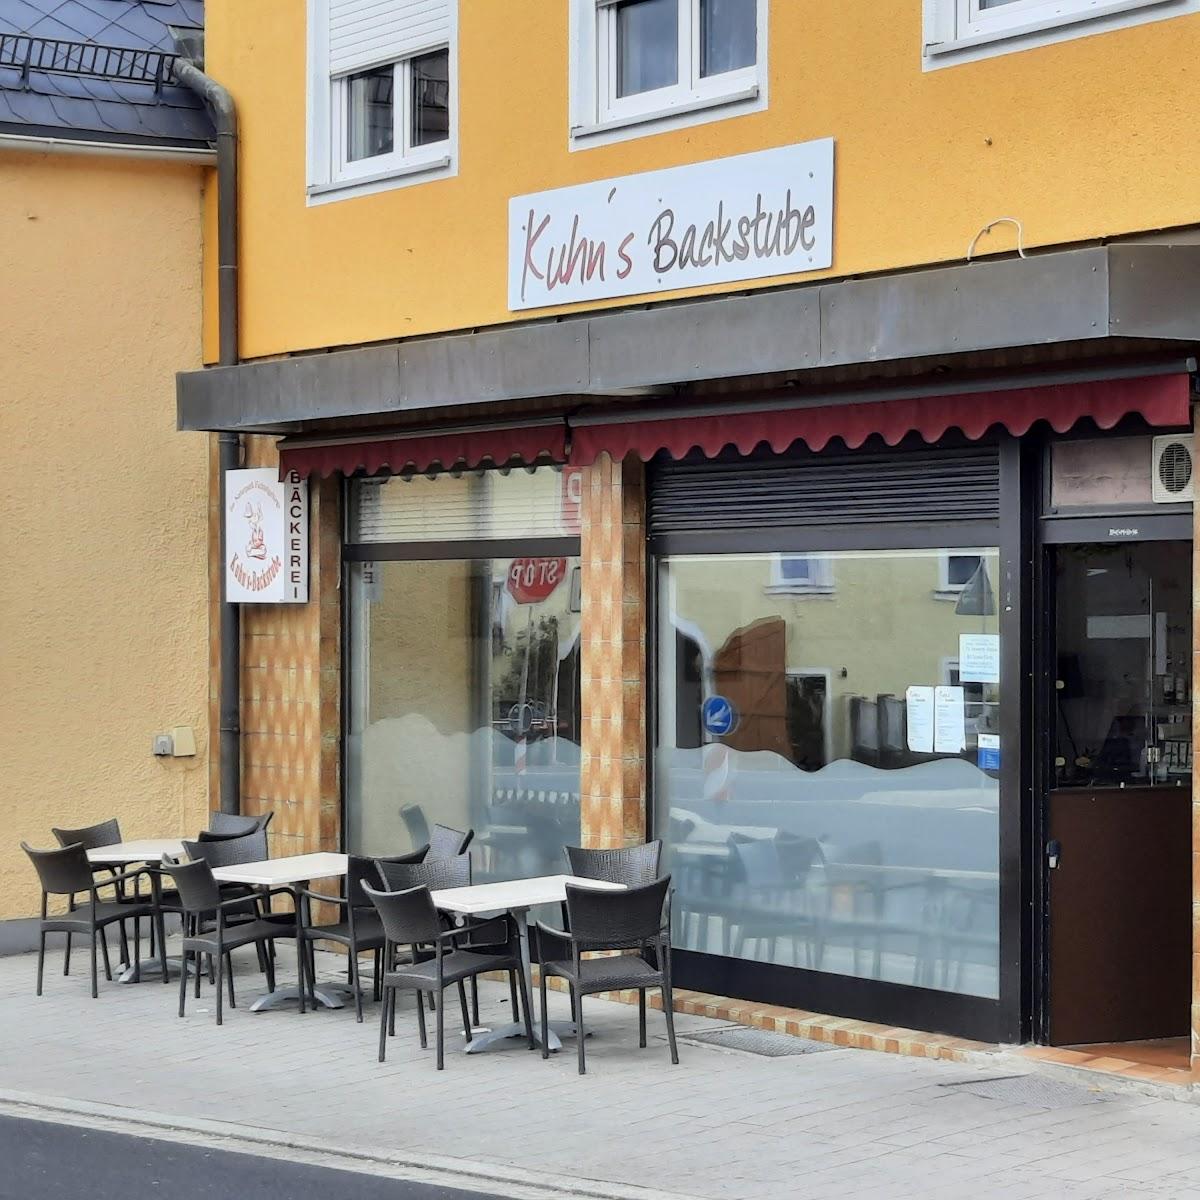 Restaurant "Kuhn’s Backstube" in Röslau